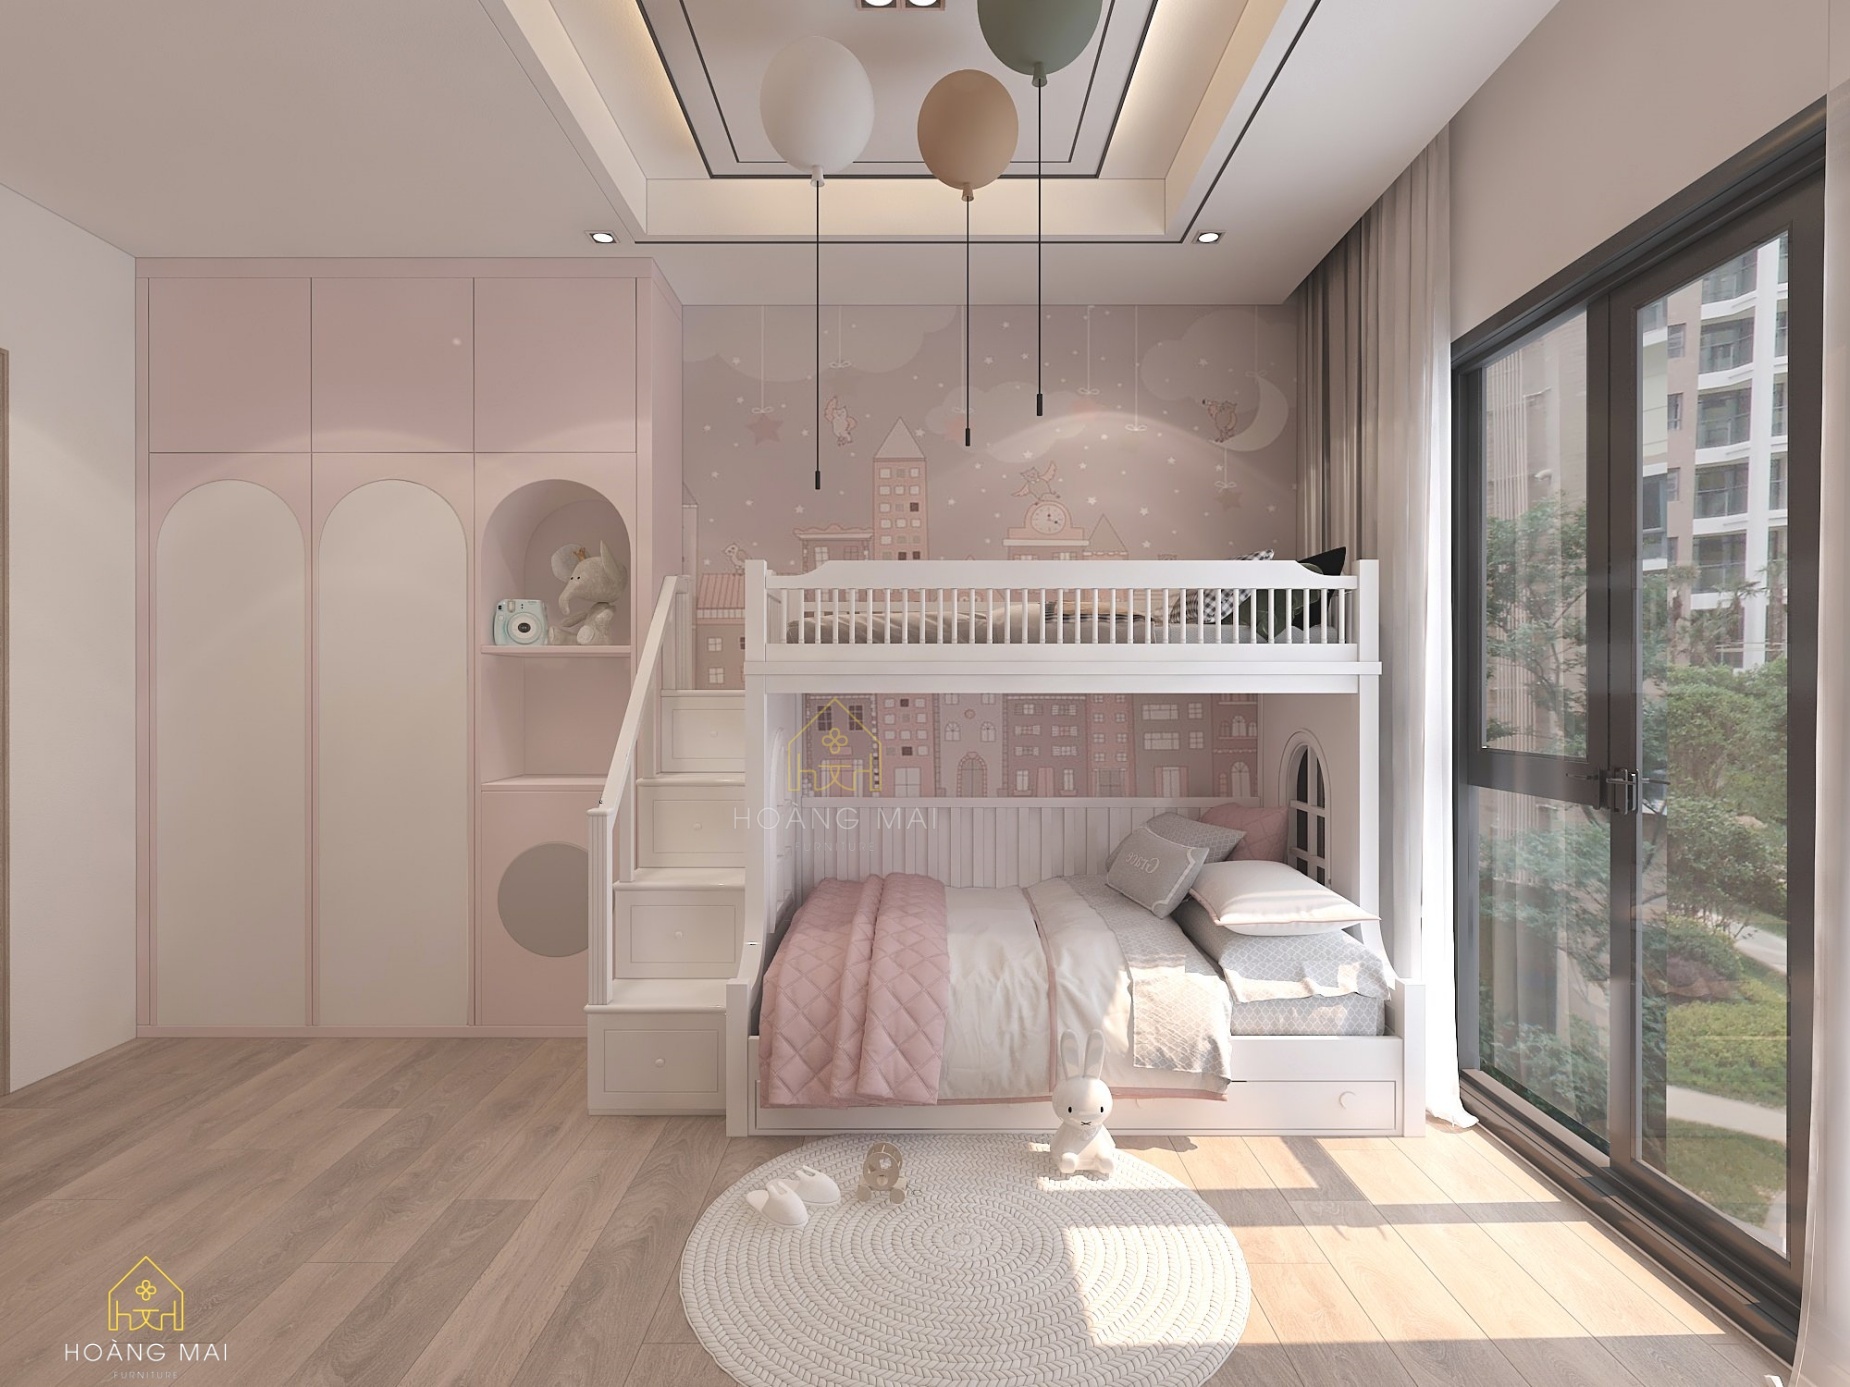 Tiêu chuẩn cần lưu ý khi thiết kế nội thất phòng ngủ cho trẻ em